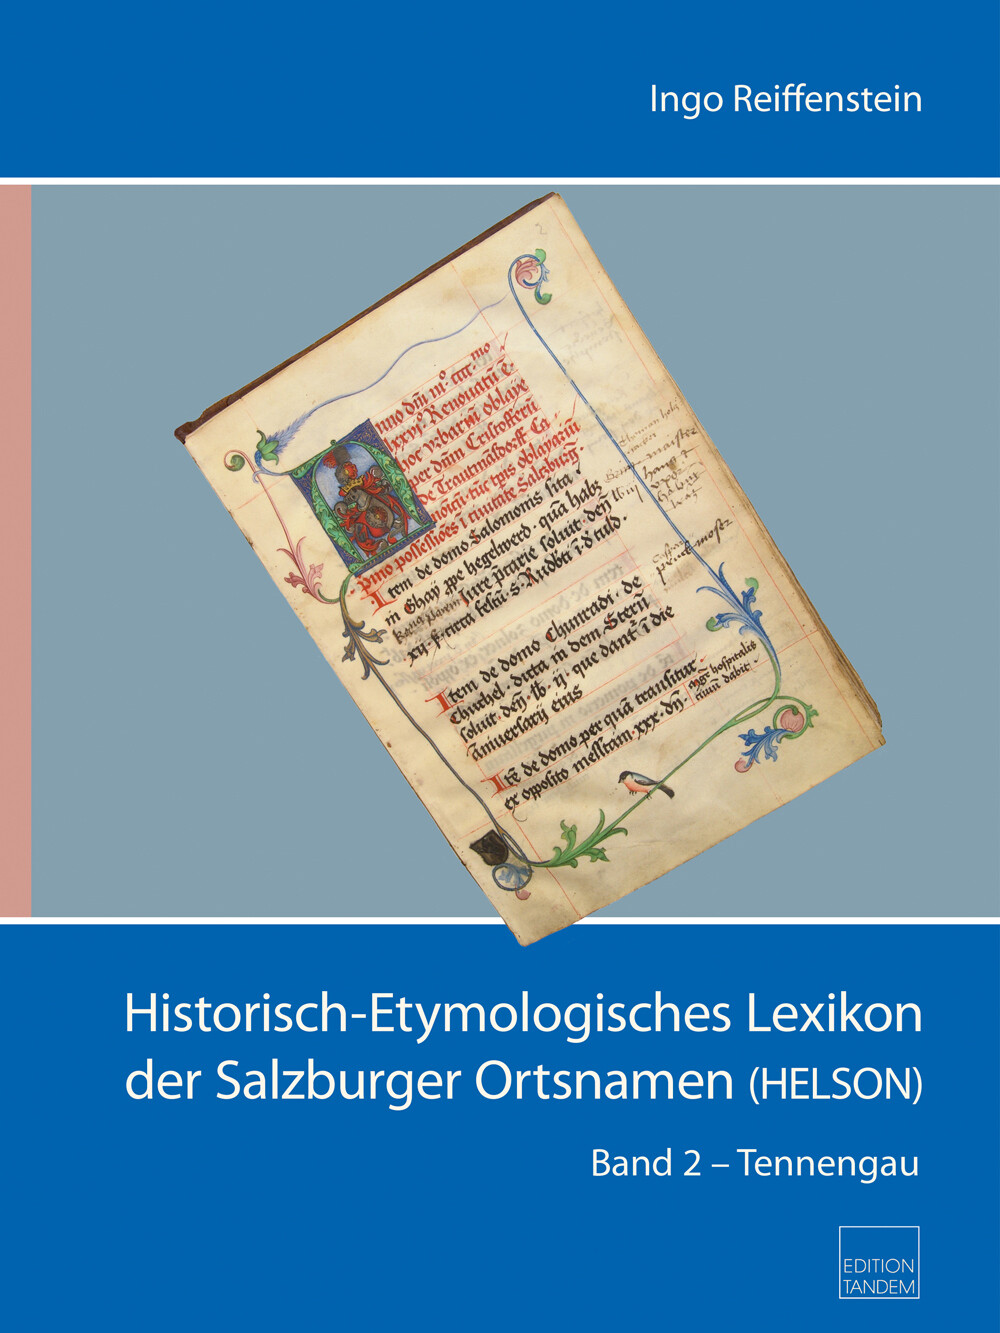 Historisch-Etymologisches Lexikon (HELSON) - Band 2